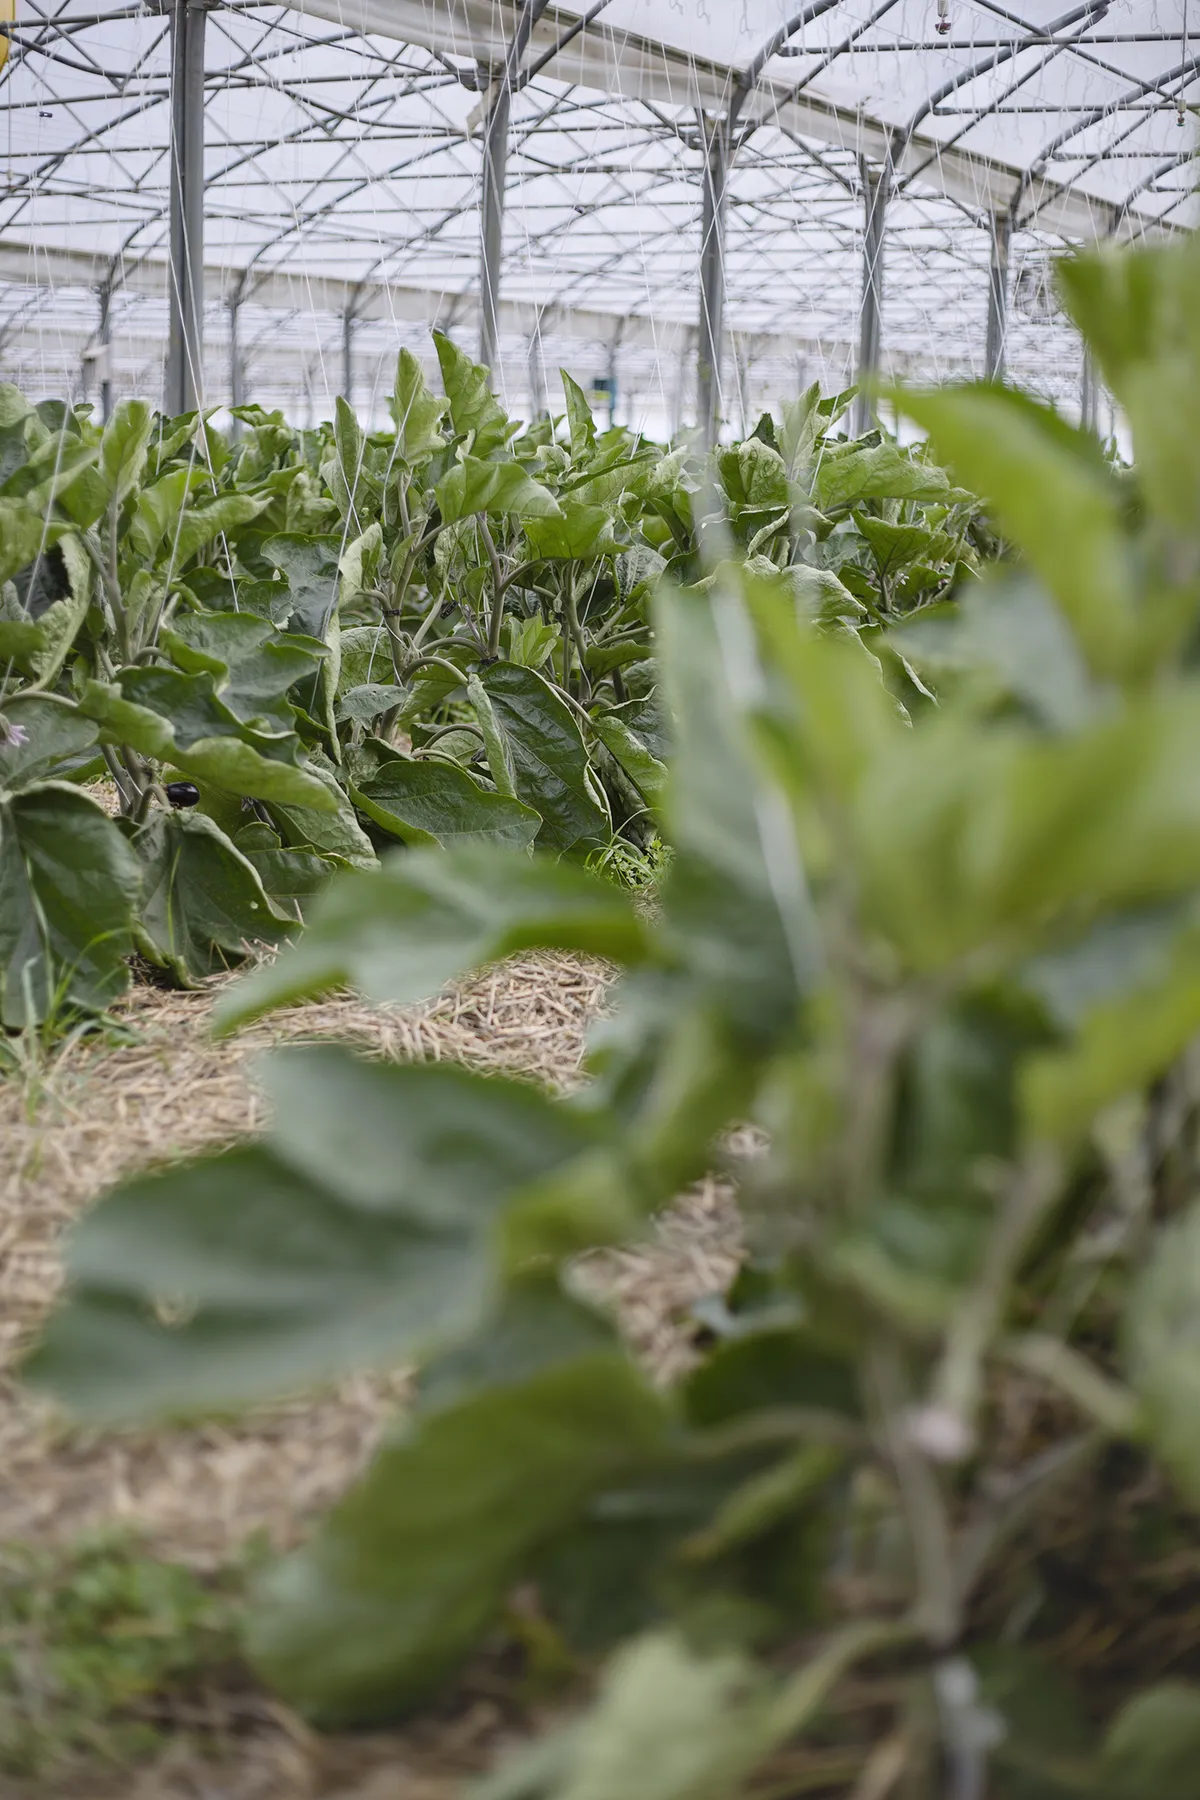 Les aubergines font parties des légumes méditérannéens cultivés en été